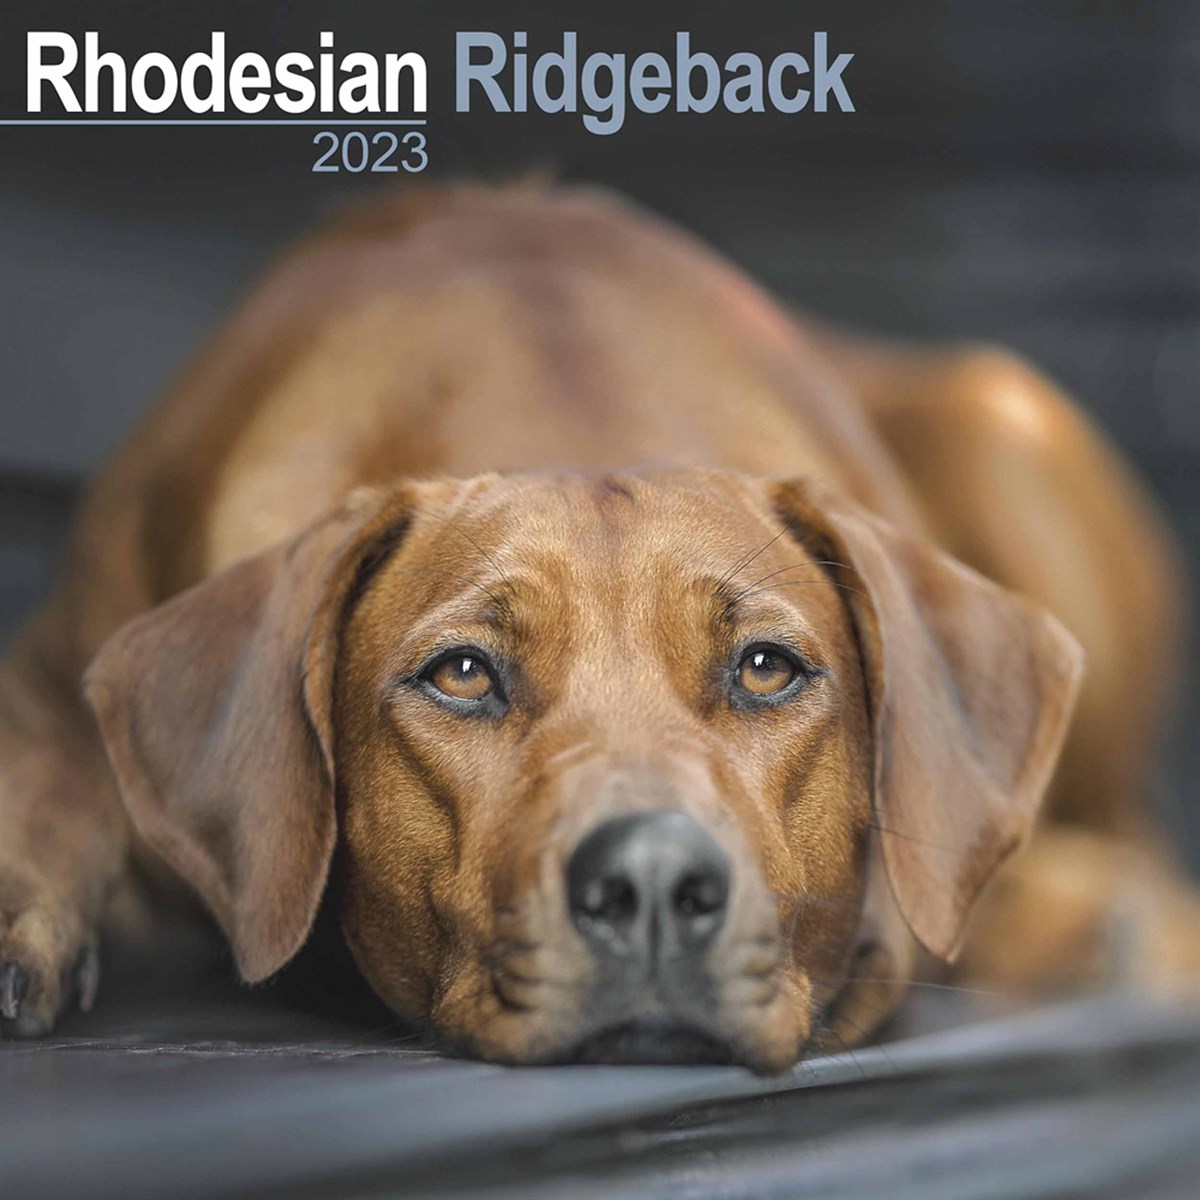 Rhodesian Ridgeback 2023 Calendars